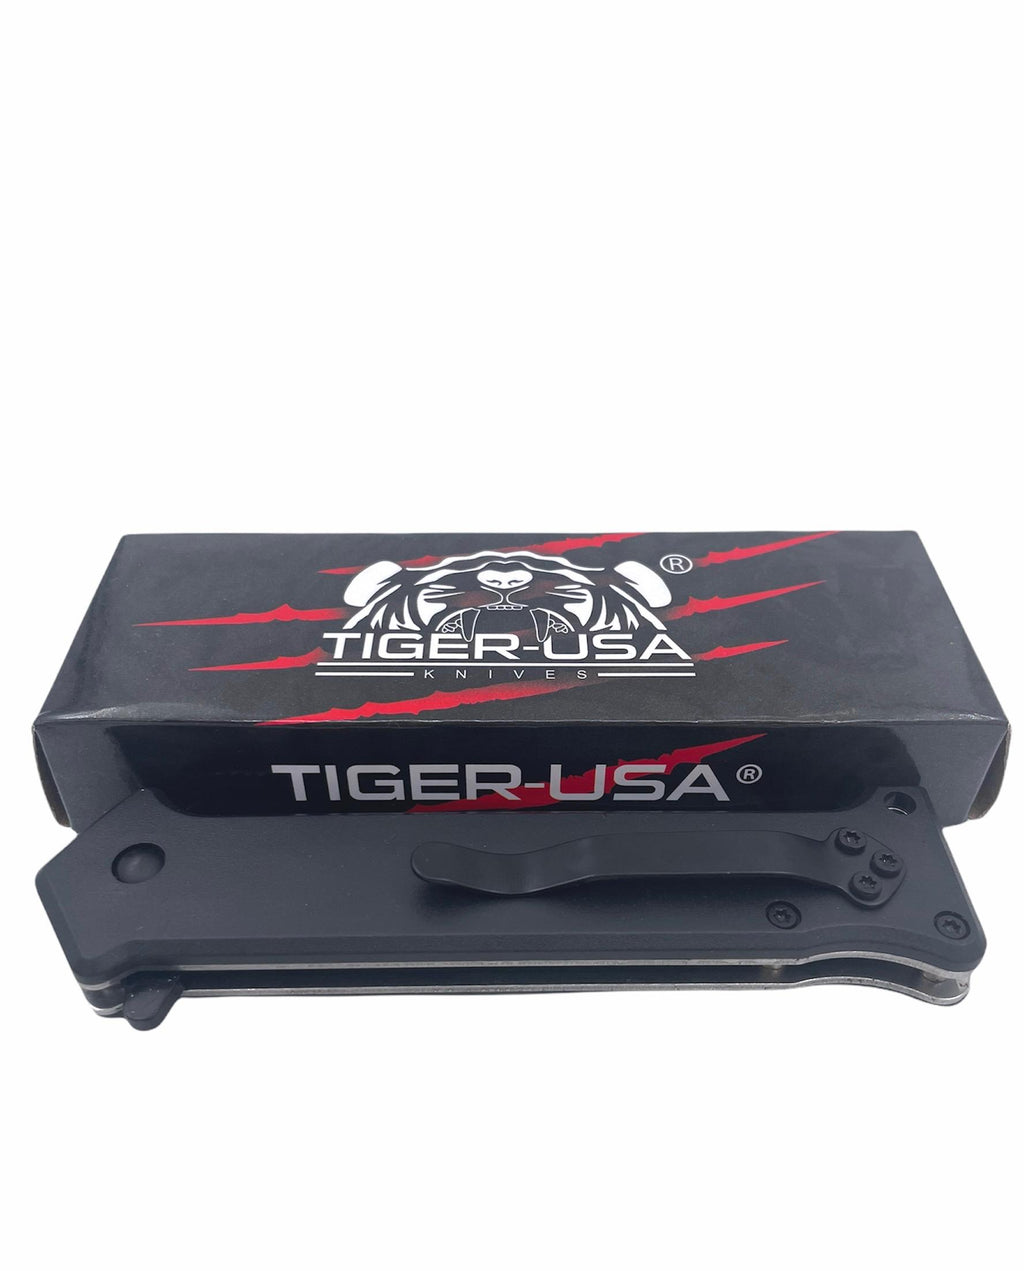 Tiger-USA Spring Assisted Knife - DEER HUNTER